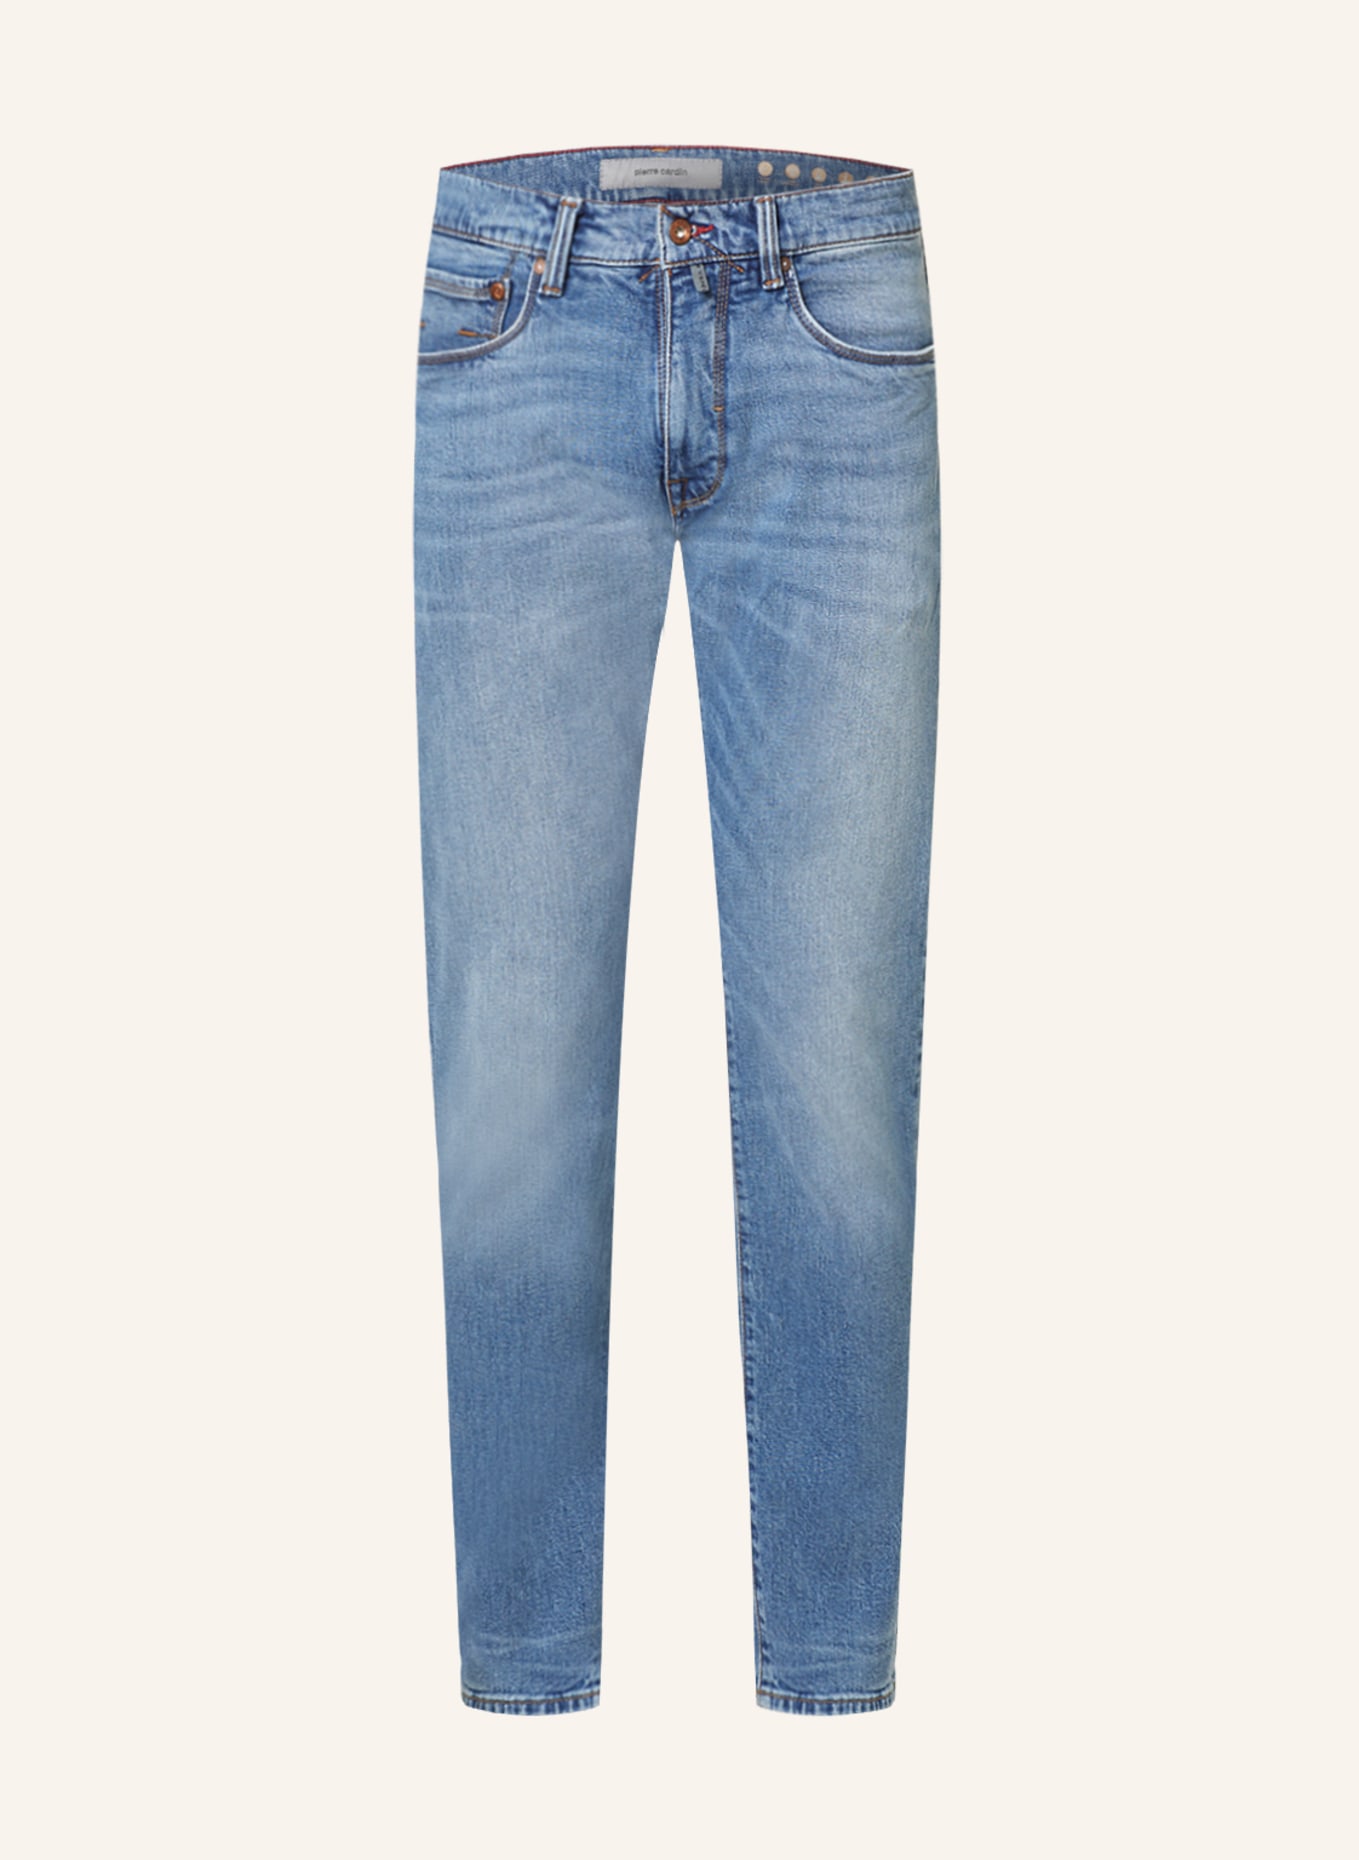 pierre cardin Jeans LYON Tapered Fit, Farbe: 6837 ocean blue fashion (Bild 1)